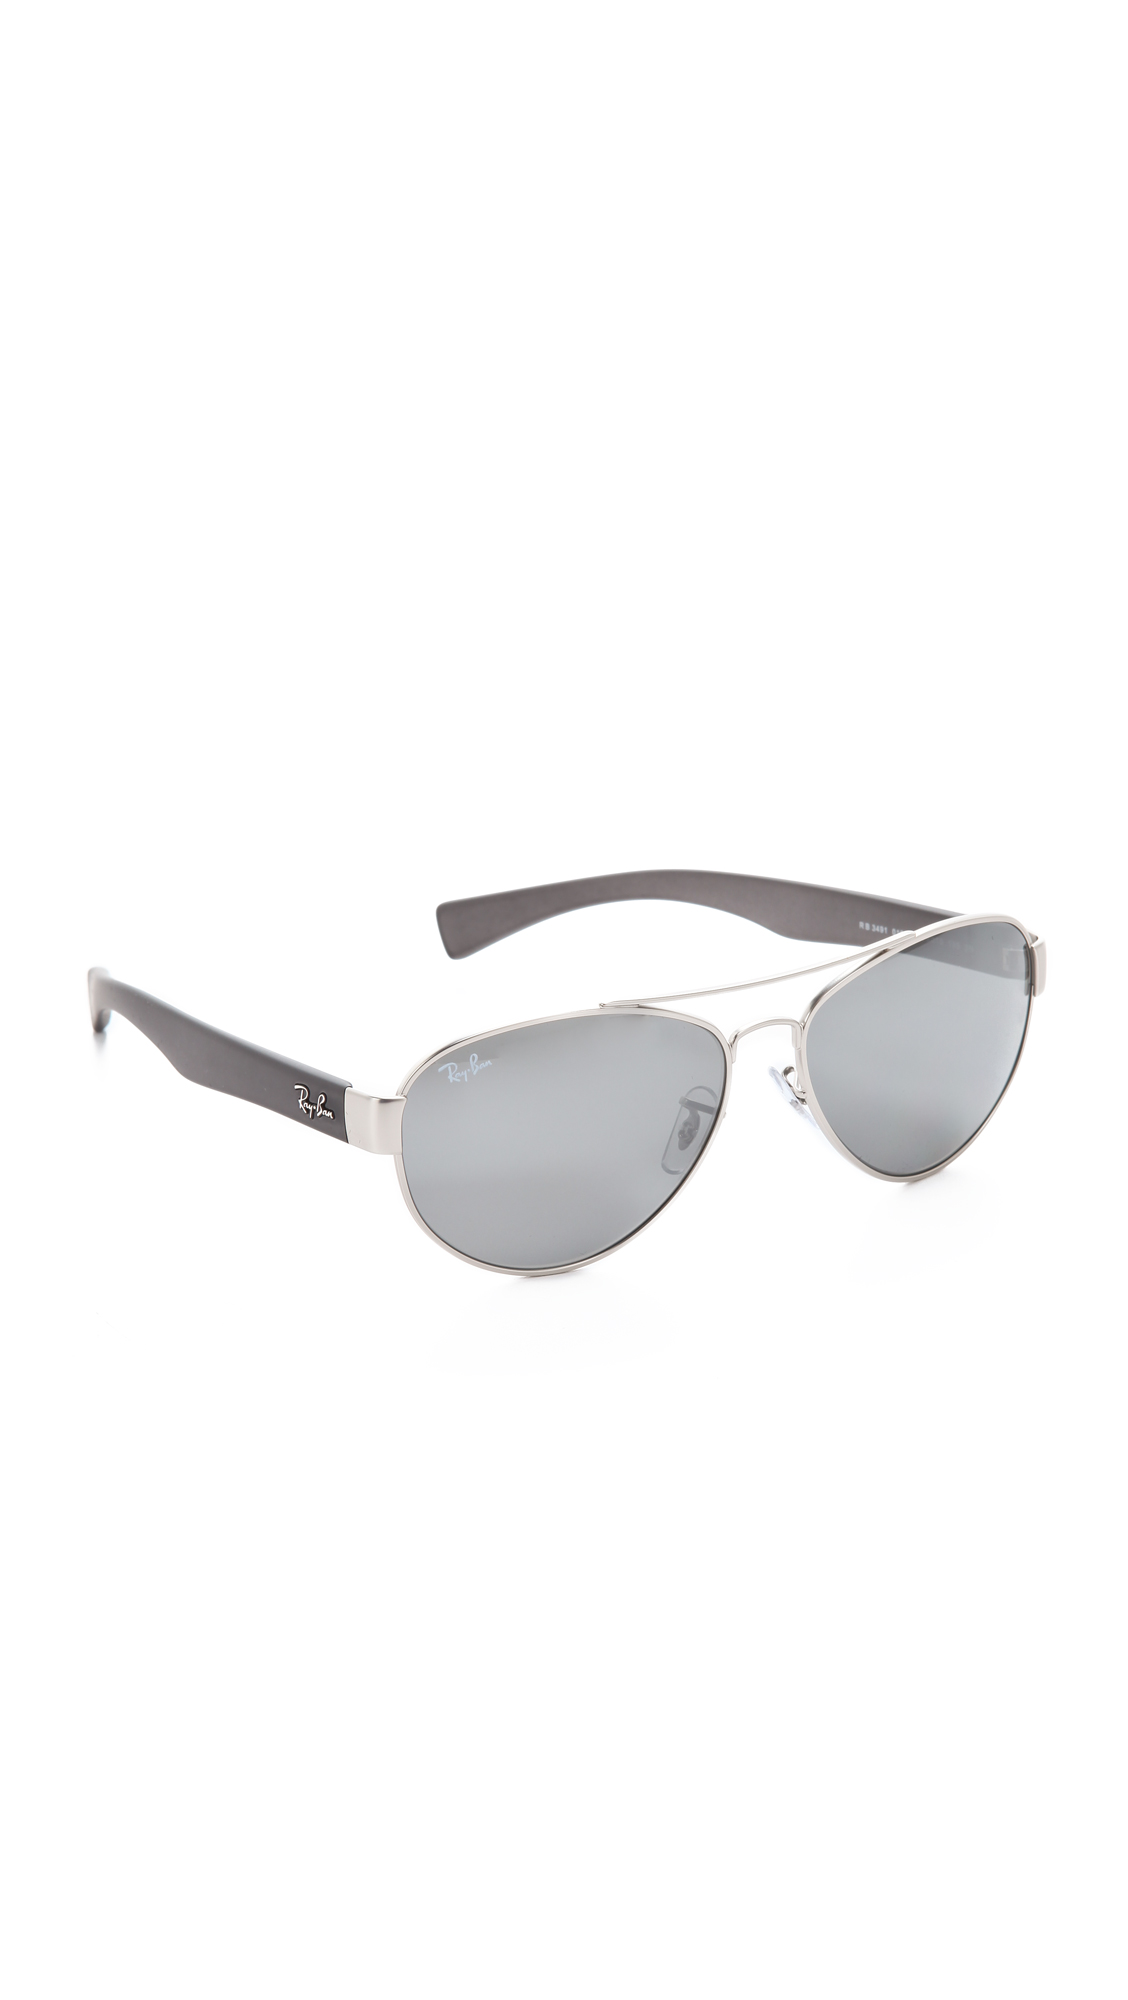 Ray Ban Mirrored Aviator Sunglasses In Metallic Lyst 